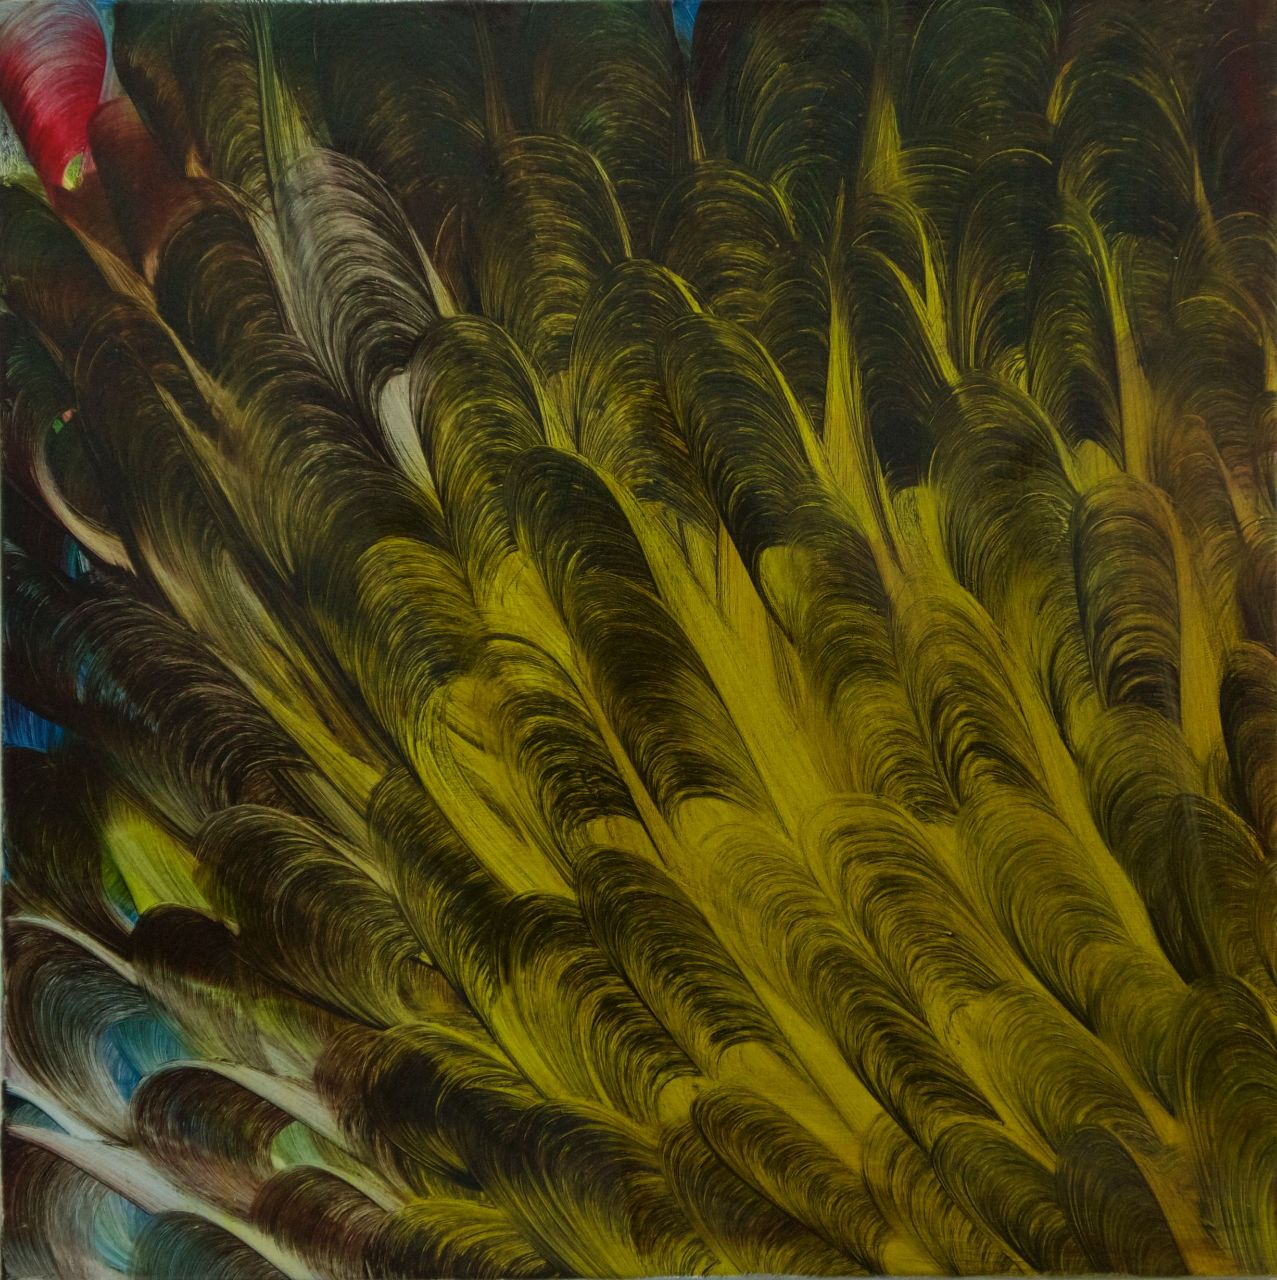 Isa Dahl, sonst, 2014, Öl auf Leinwand, 100 cm x 100 cm, Preis auf Anfrage, dai150kü